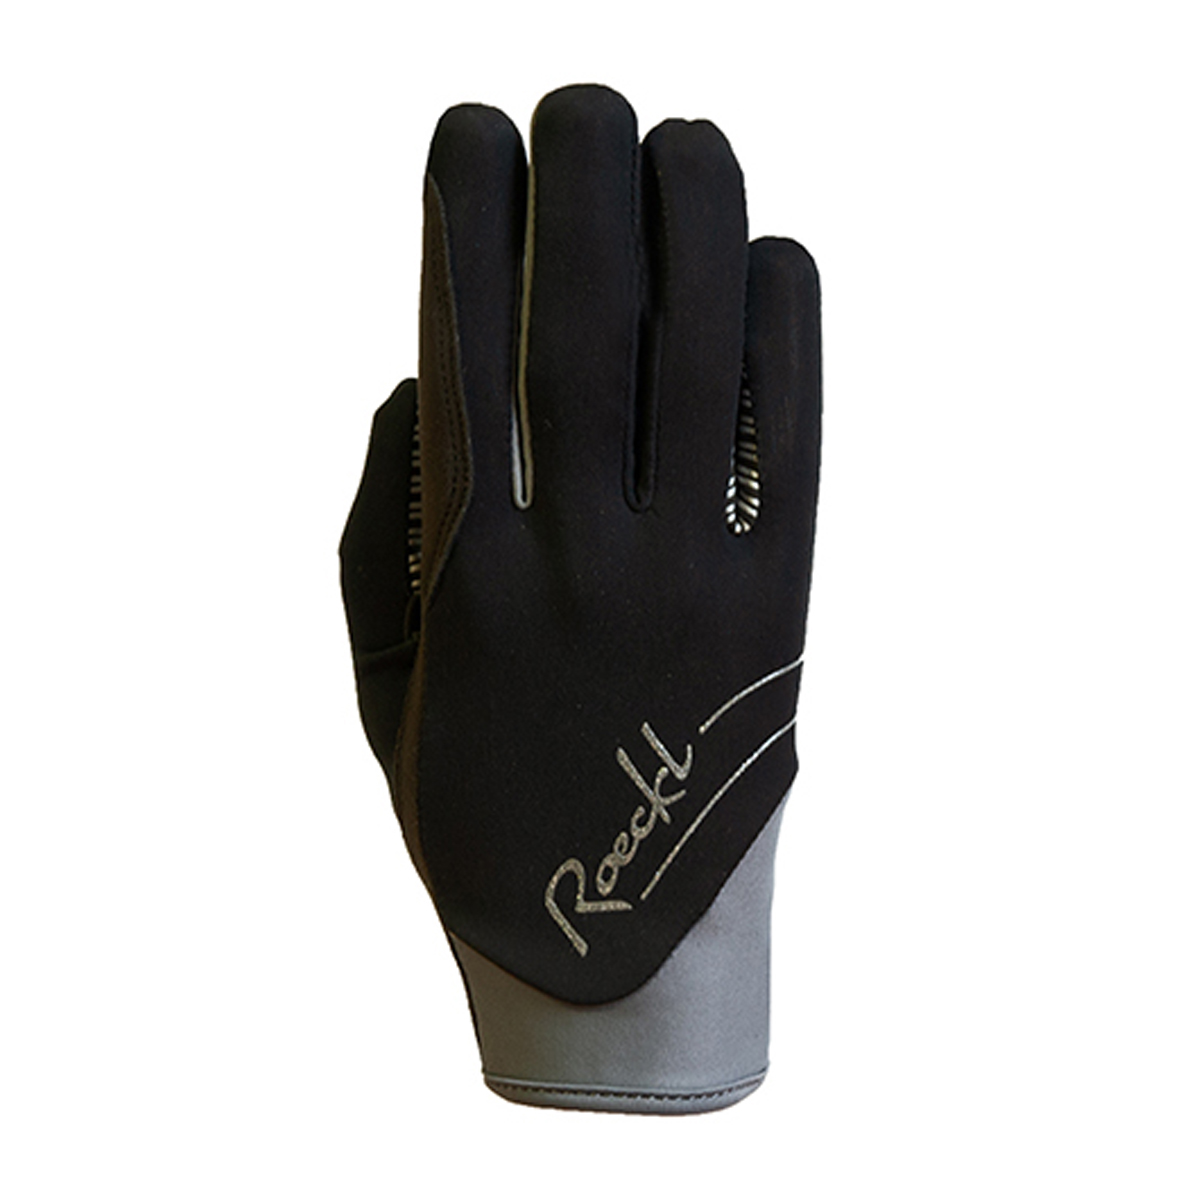 Handschoenen Roeckl June Durasense, 6,5 in zwart/grijs